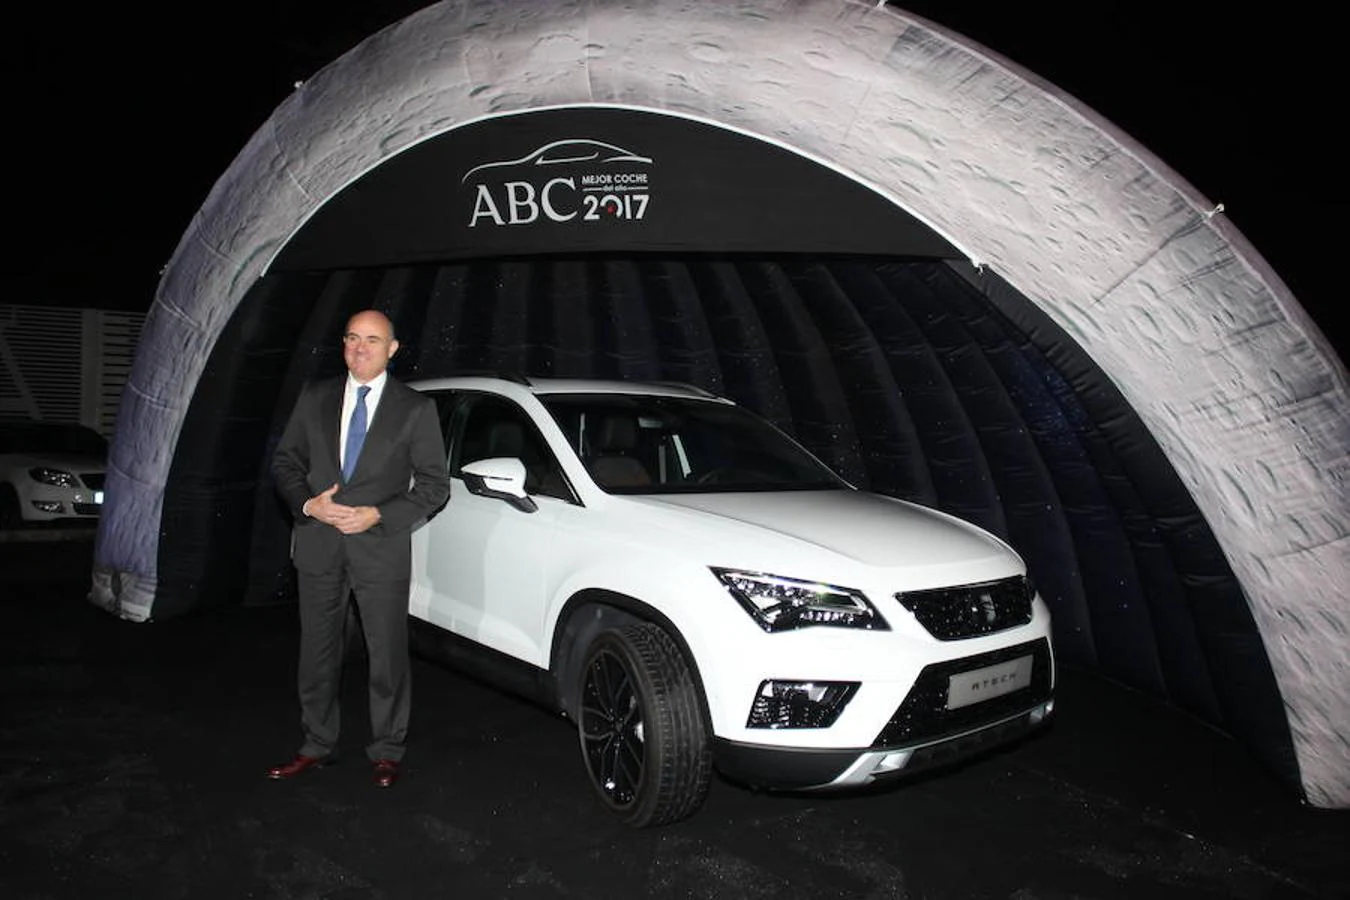 El ministro de Economía, Industria y Competitividad, Luis de Guindo, junto al Seat Ateca, coche del año ABC 2017